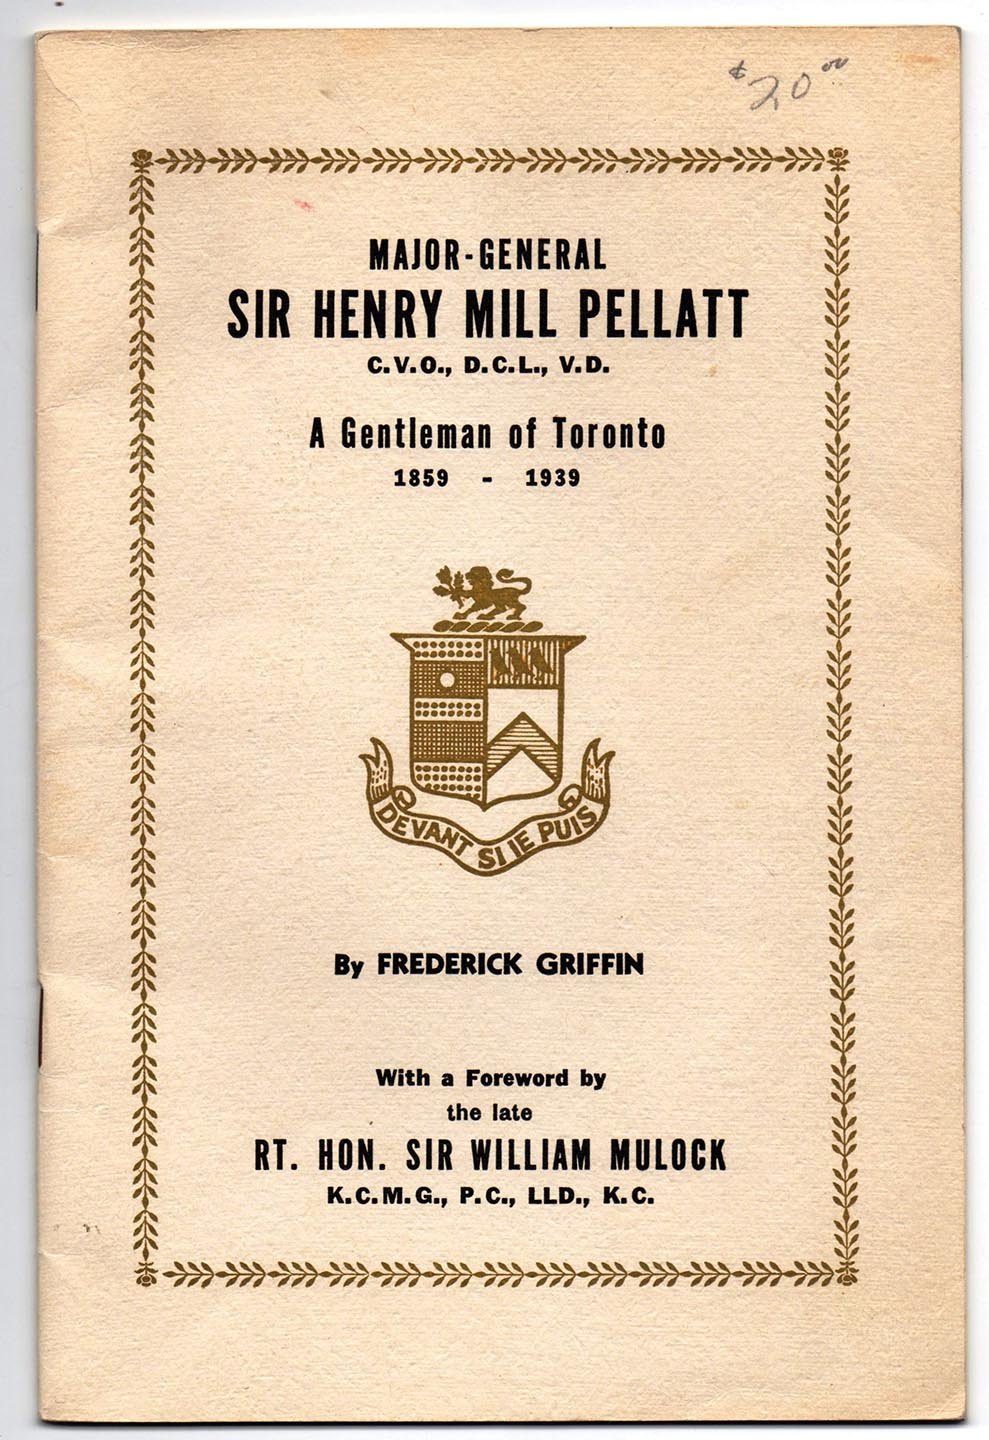 Major-General Sir Henry Mill Pellatt, C.V.O., D.C.L., V.D.: A Gentleman of Toronto 1859-1939